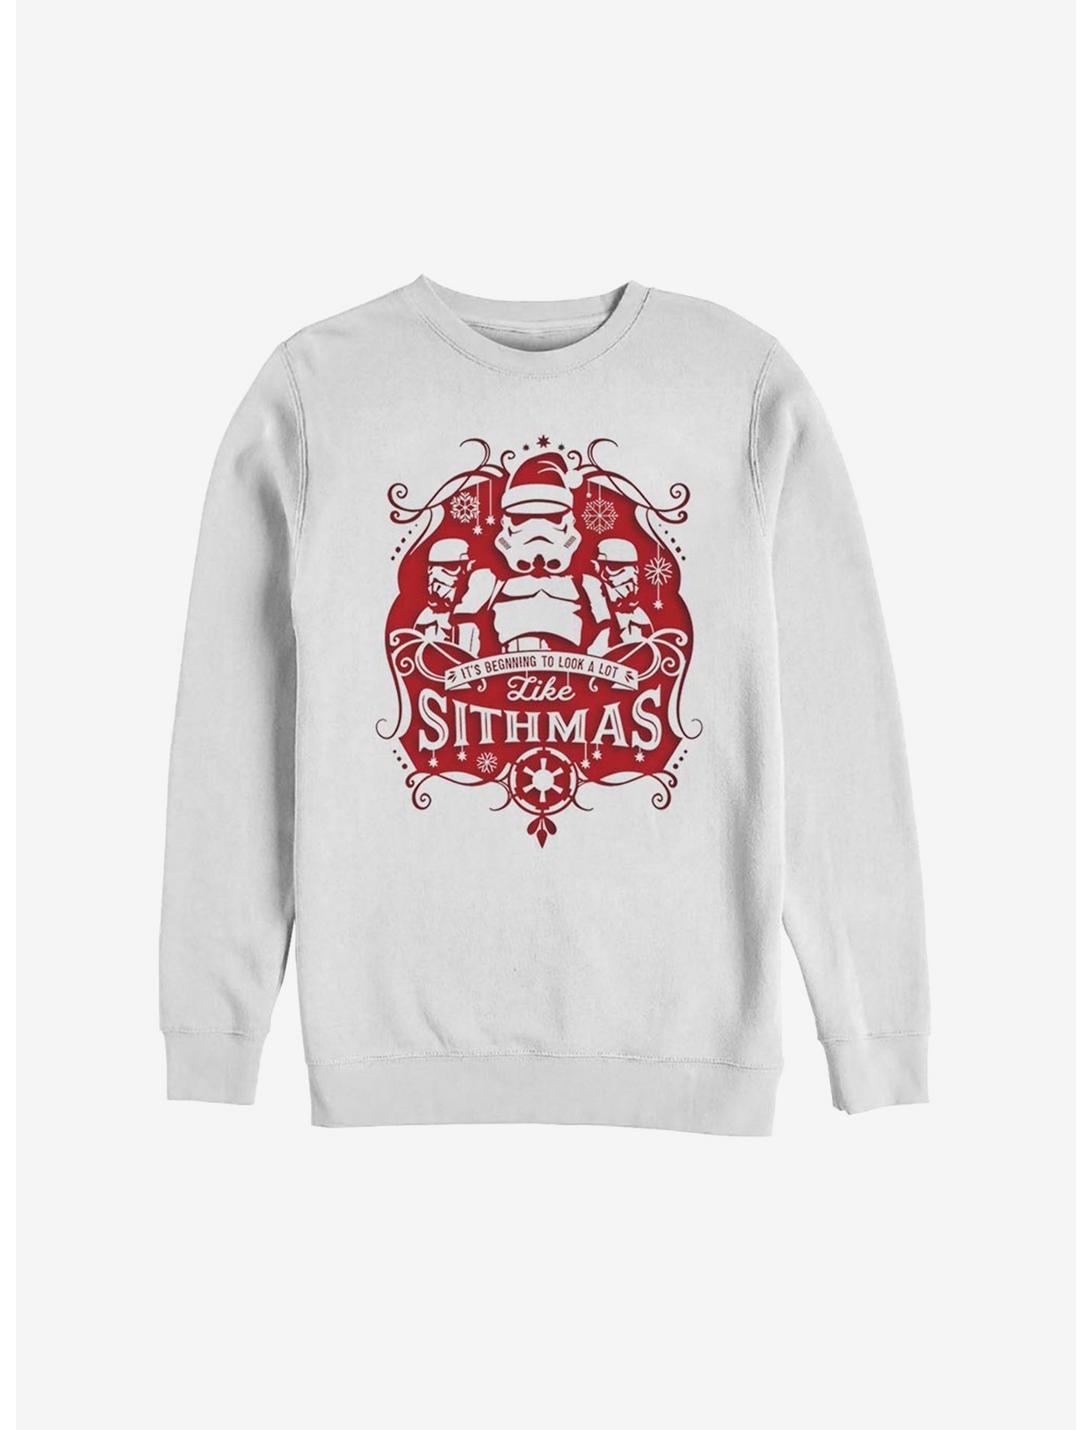 Star Wars Like Sithmas Christmas Sweatshirt, WHITE, hi-res